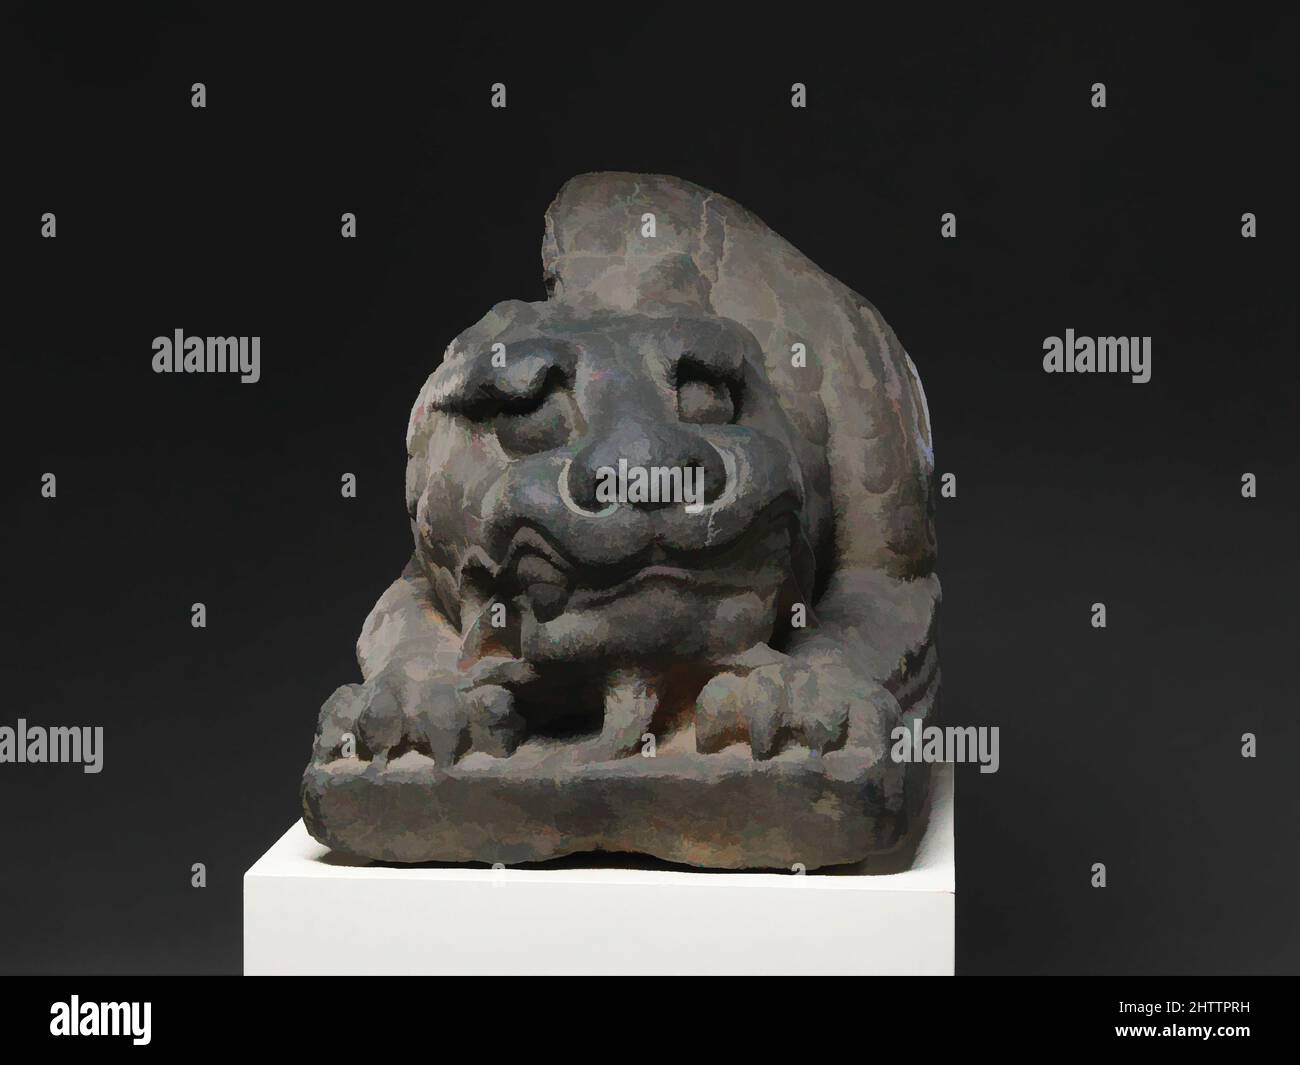 Kunst inspiriert von Guardian Lion, Northern Qi Dynastie (550–577), Mitte des 6.. Jahrhunderts, China, Kalkstein, H. 25 3/4 Zoll (65,4 cm); B: 22 Zoll (55,9 cm); D. 23 Zoll (58,4 cm), Skulptur, einer von einem Paar, entblößt dieser erbitterte Schutzlöwe seine Reißzähne, hockt und greift die Plattform unter ihm mit Classic Works, die von Artotop mit einem Schuss Moderne modernisiert wurden. Formen, Farbe und Wert, auffällige visuelle Wirkung auf Kunst. Emotionen durch Freiheit von Kunstwerken auf zeitgemäße Weise. Eine zeitlose Botschaft, die eine wild kreative neue Richtung verfolgt. Künstler, die sich dem digitalen Medium zuwenden und die Artotop NFT erschaffen Stockfoto